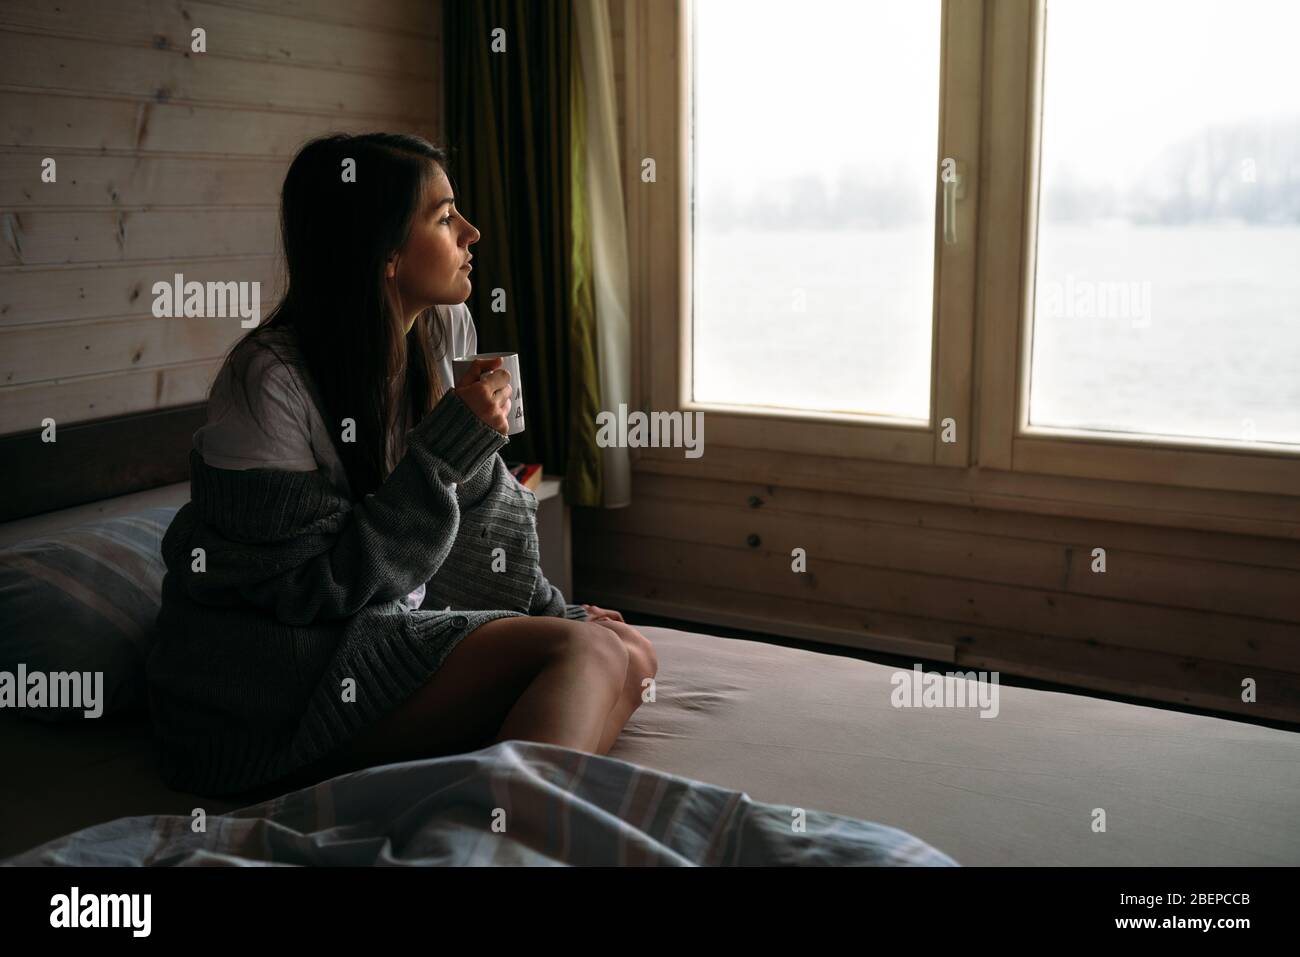 Mujer joven que se aloja en casa bebiendo café/té, mirando a través de la ventana.comenzando el día, ritual de la mañana.Quaratine aislamiento de uno mismo Concept.Proven wom Foto de stock